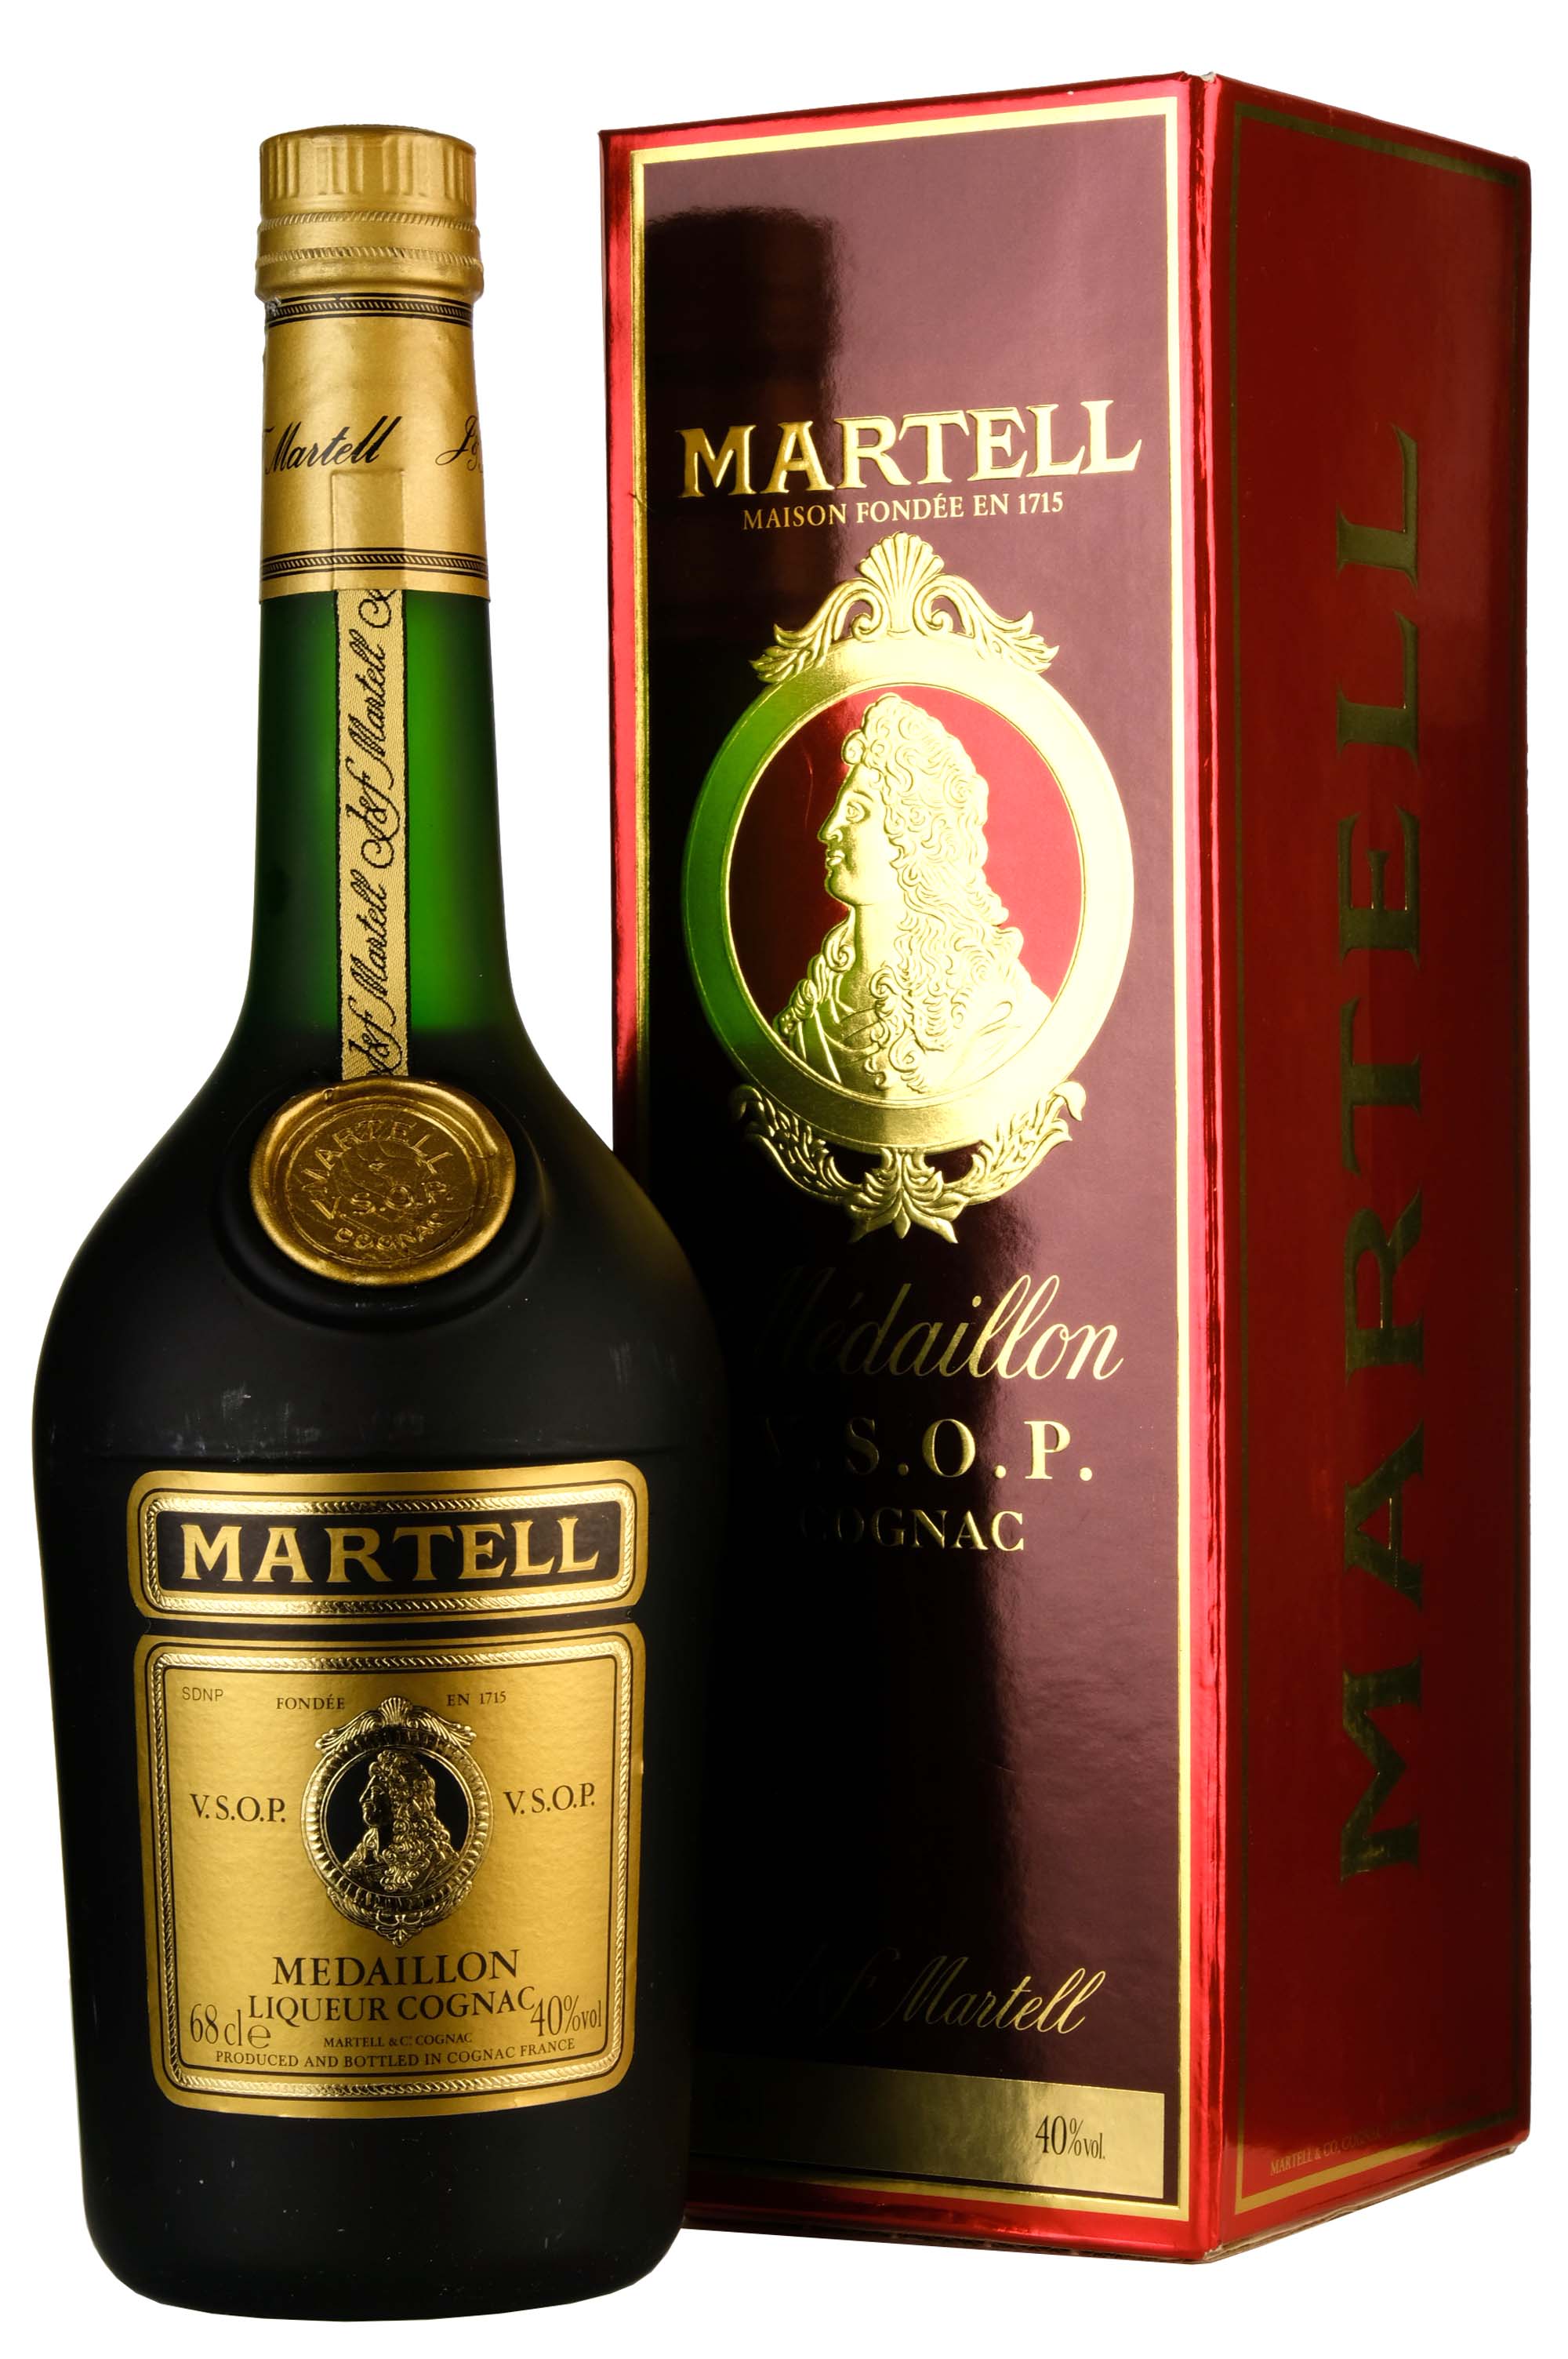 Martell Medaillon VSOP Liqueur Cognac